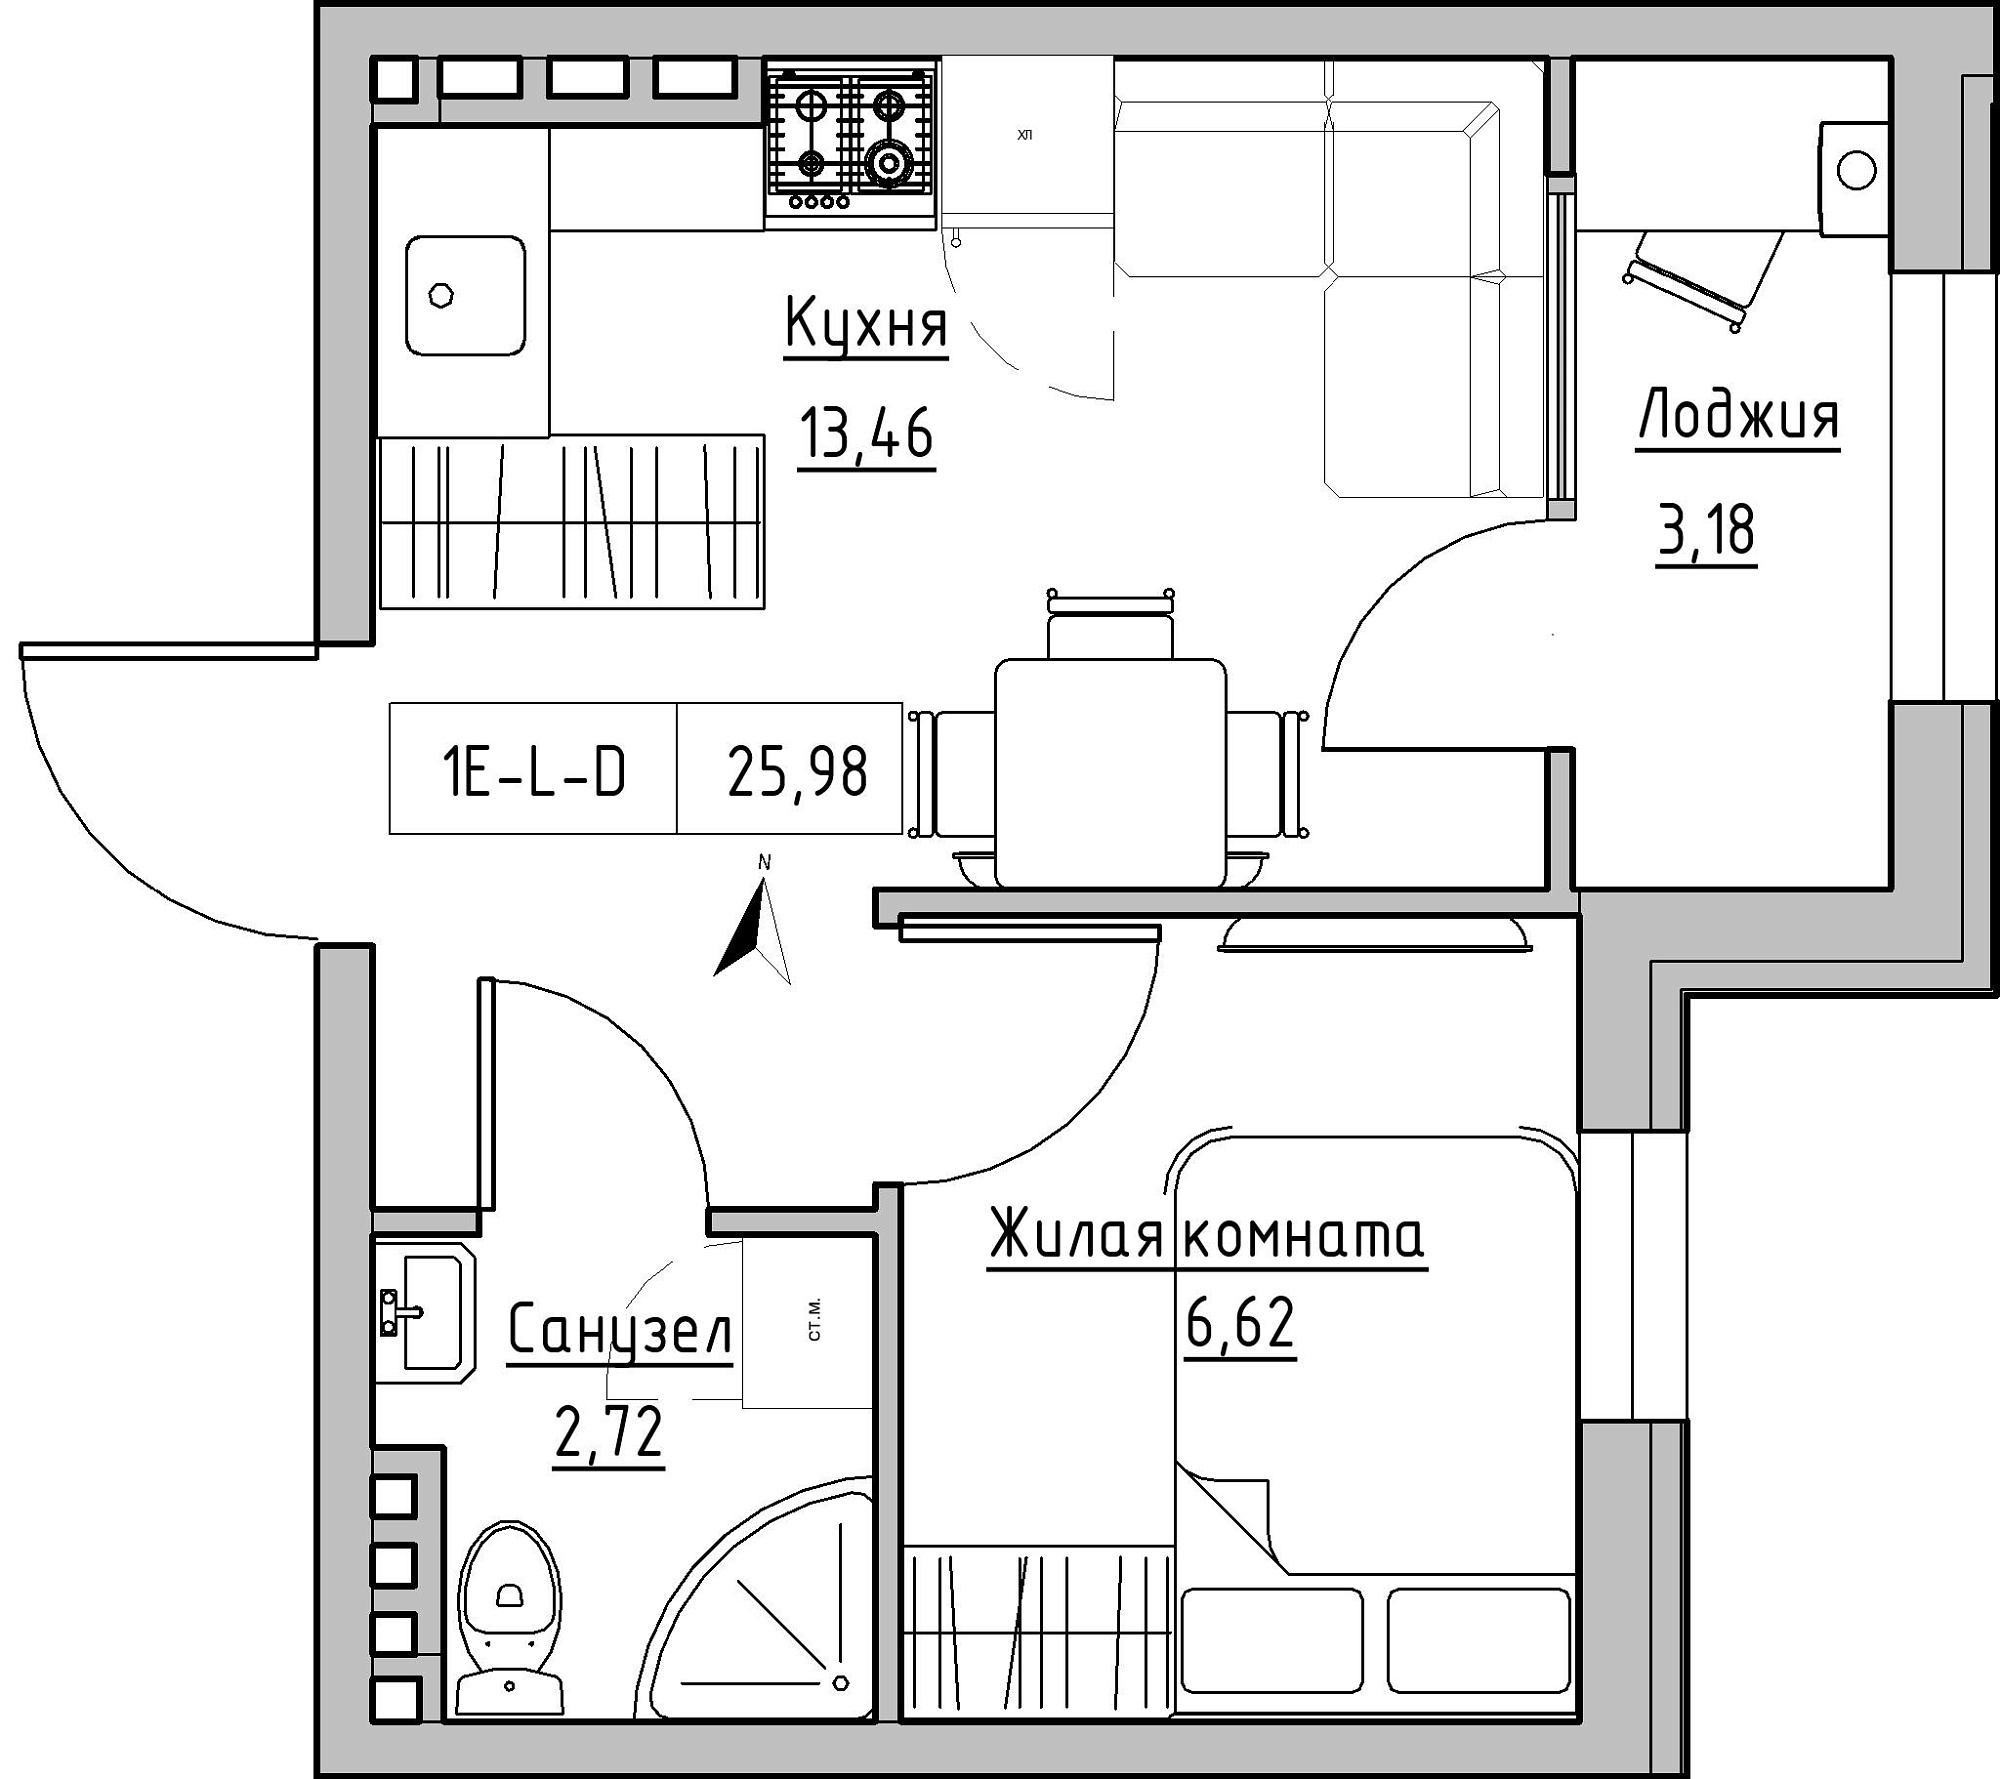 Планировка 1-к квартира площей 25.98м2, KS-024-03/0017.